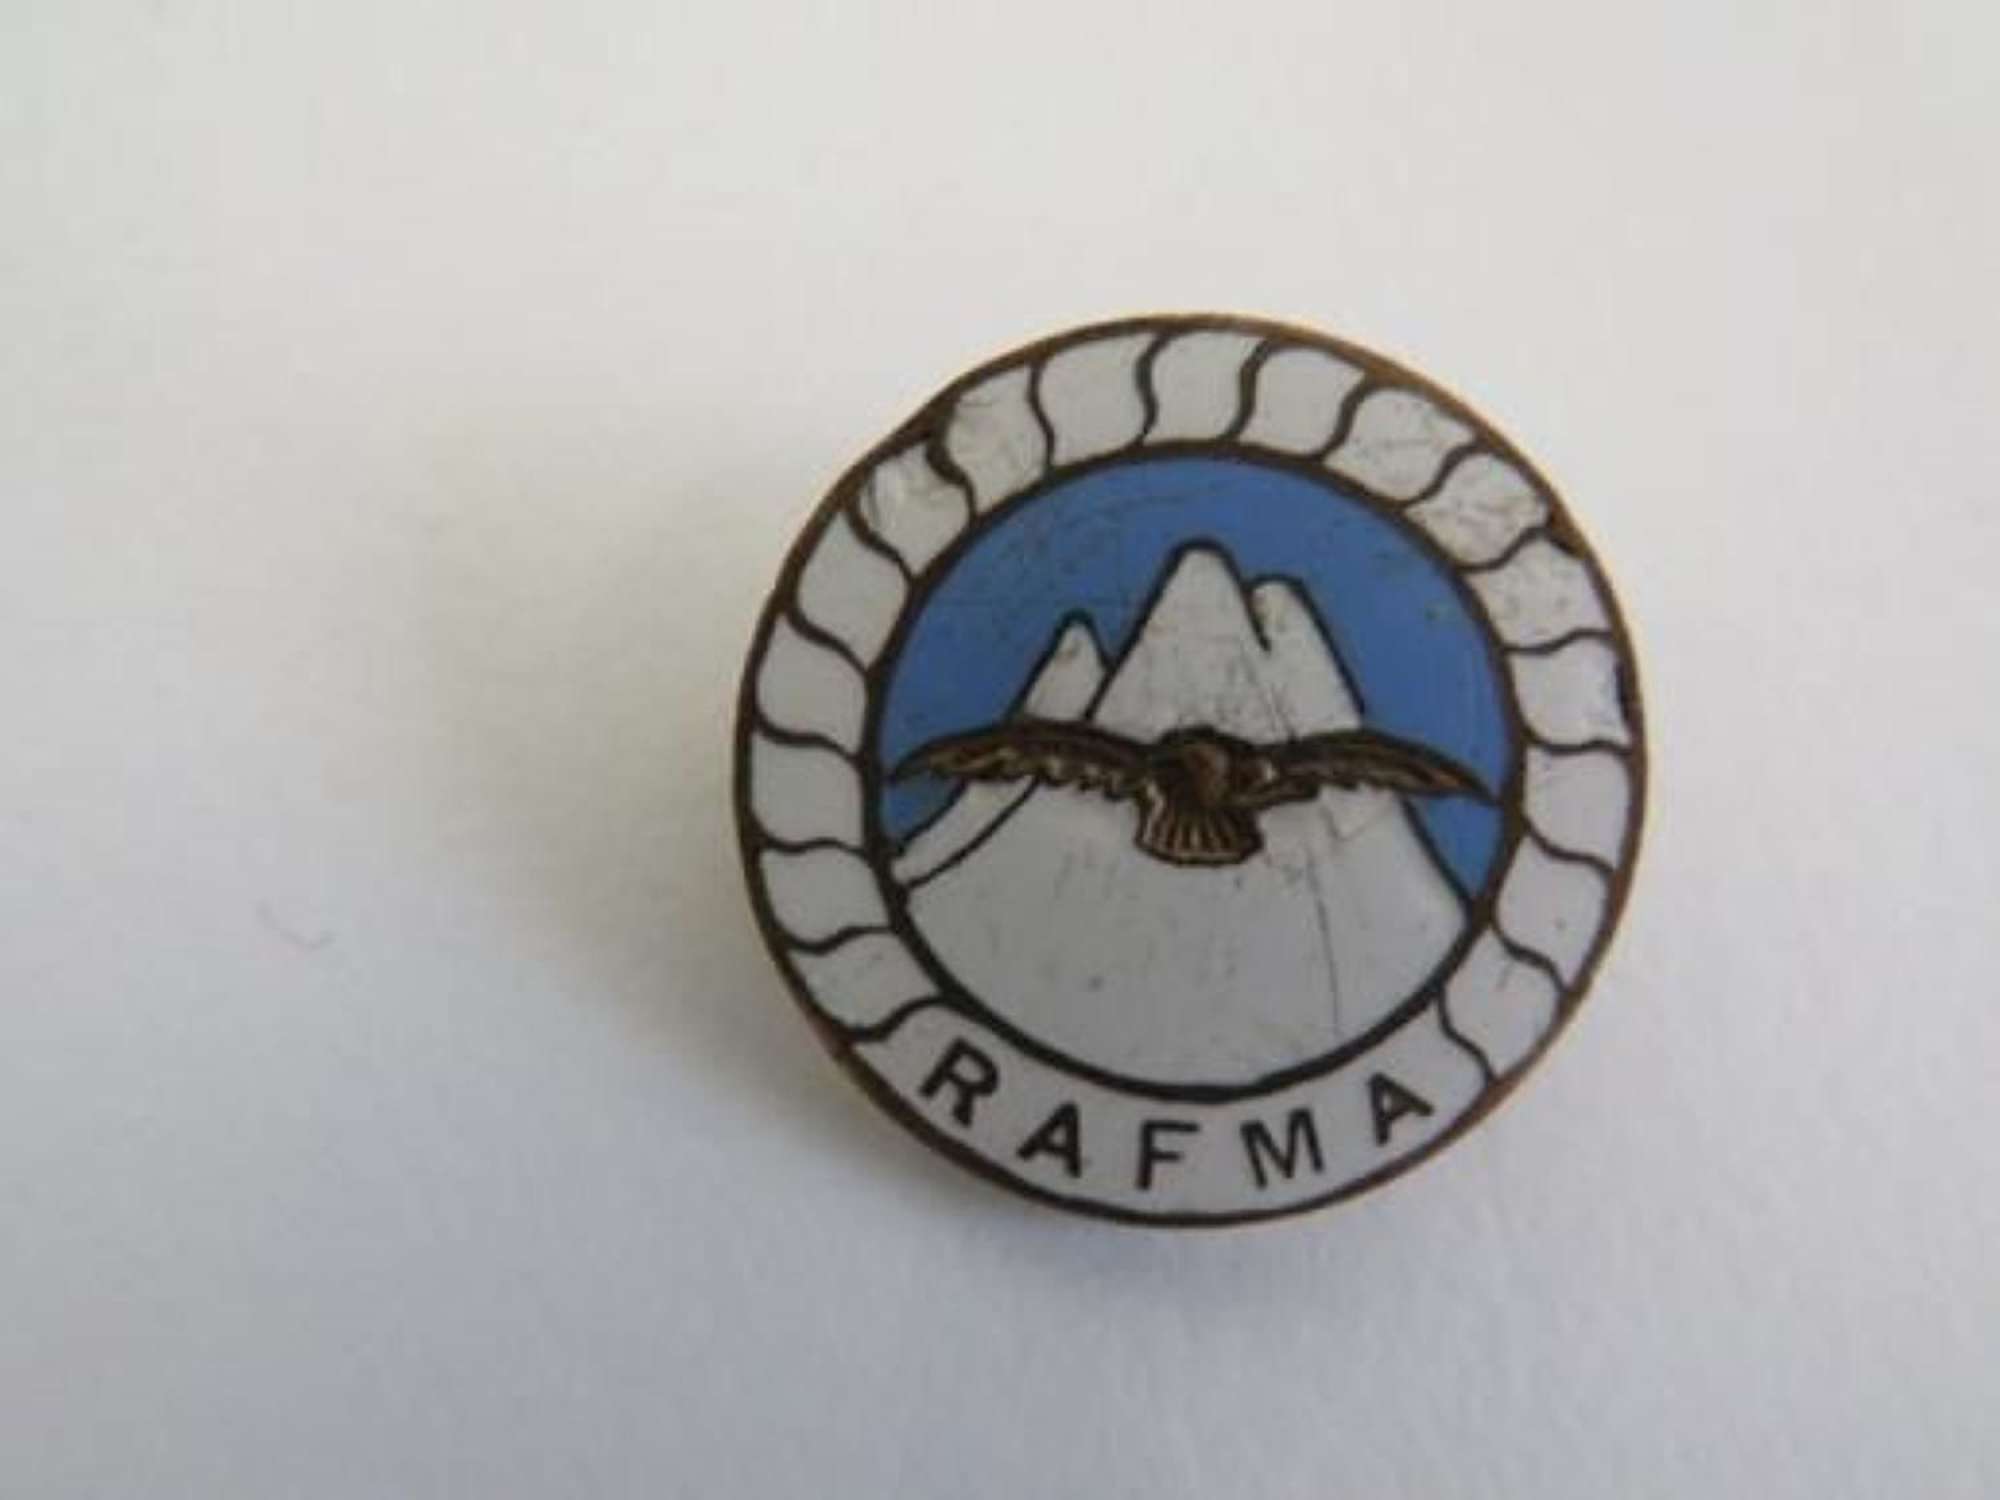 R.A.F.M.A Lapel Badge